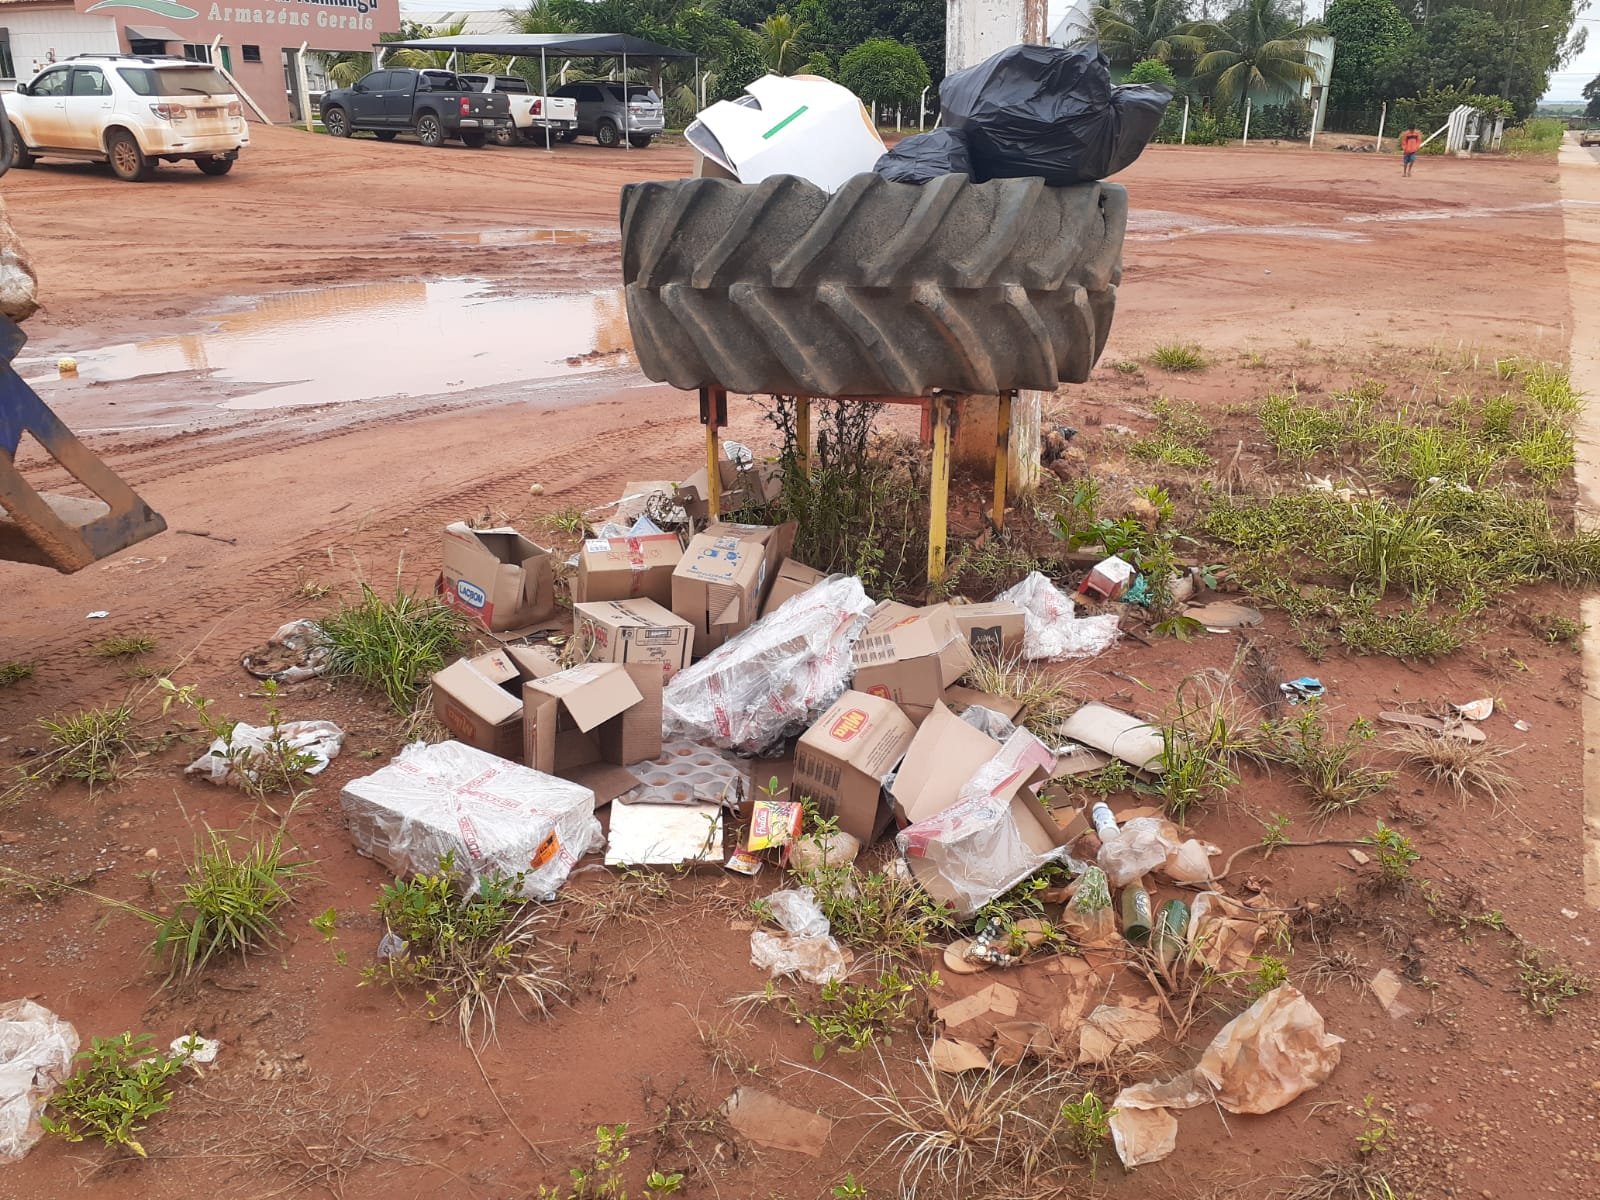 Moradores usam sacola nos pés para atravessar rua com lamaçal em MT, Mato  Grosso